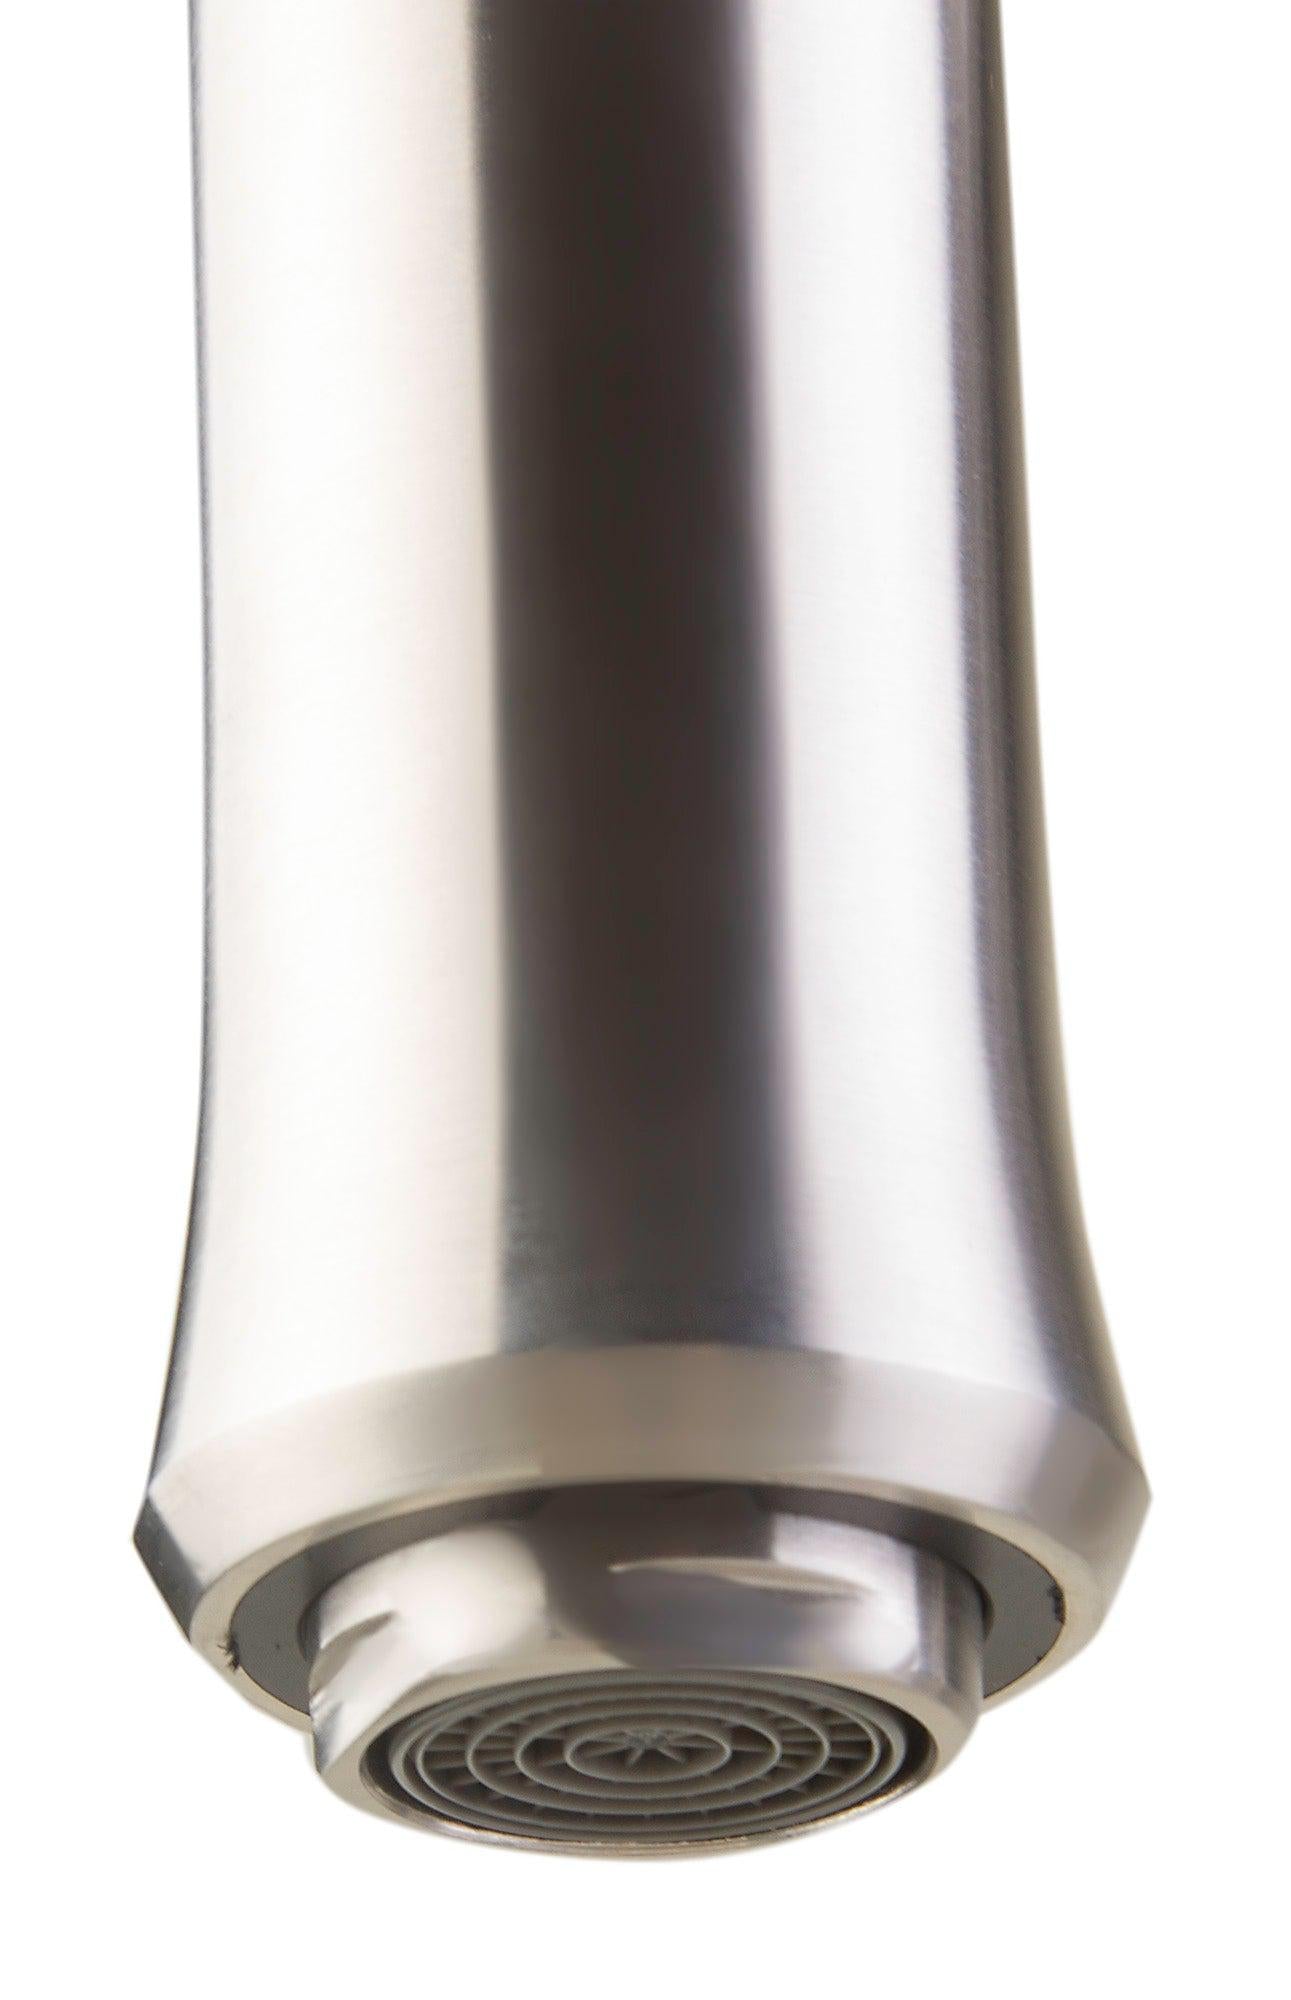 ALFI brand AB2015 Brushed Gooseneck Single Hole Faucet-DirectSinks